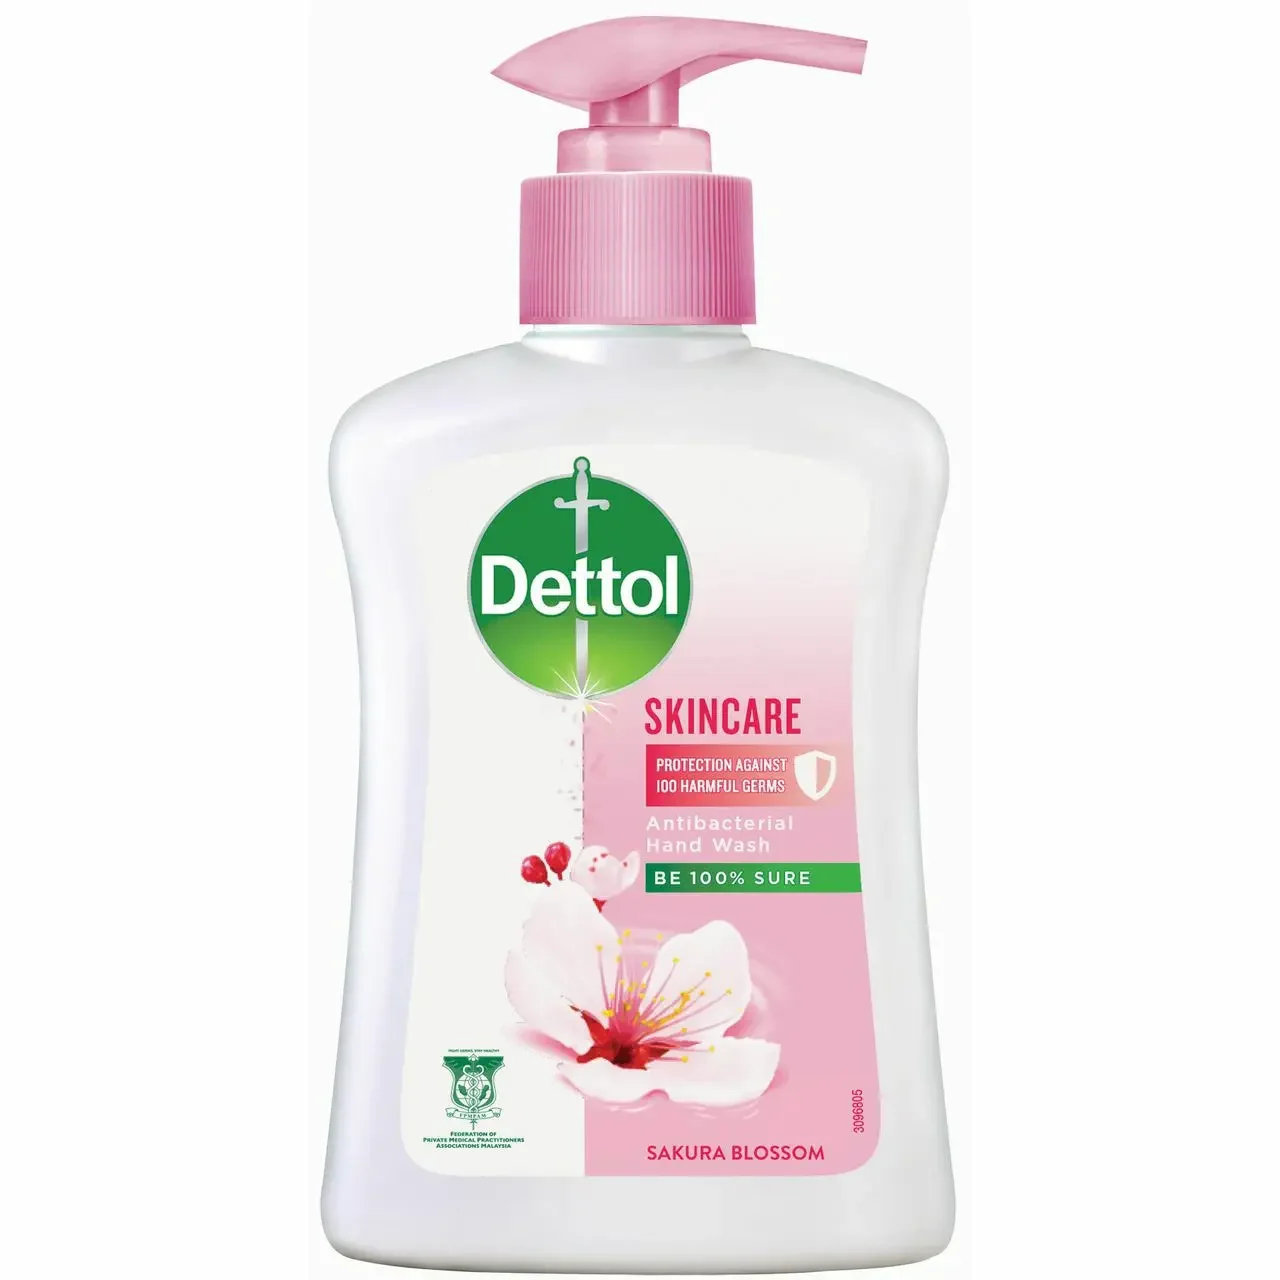 Dettol Antibacterial Hand Wash Sakura Blossom (250g)